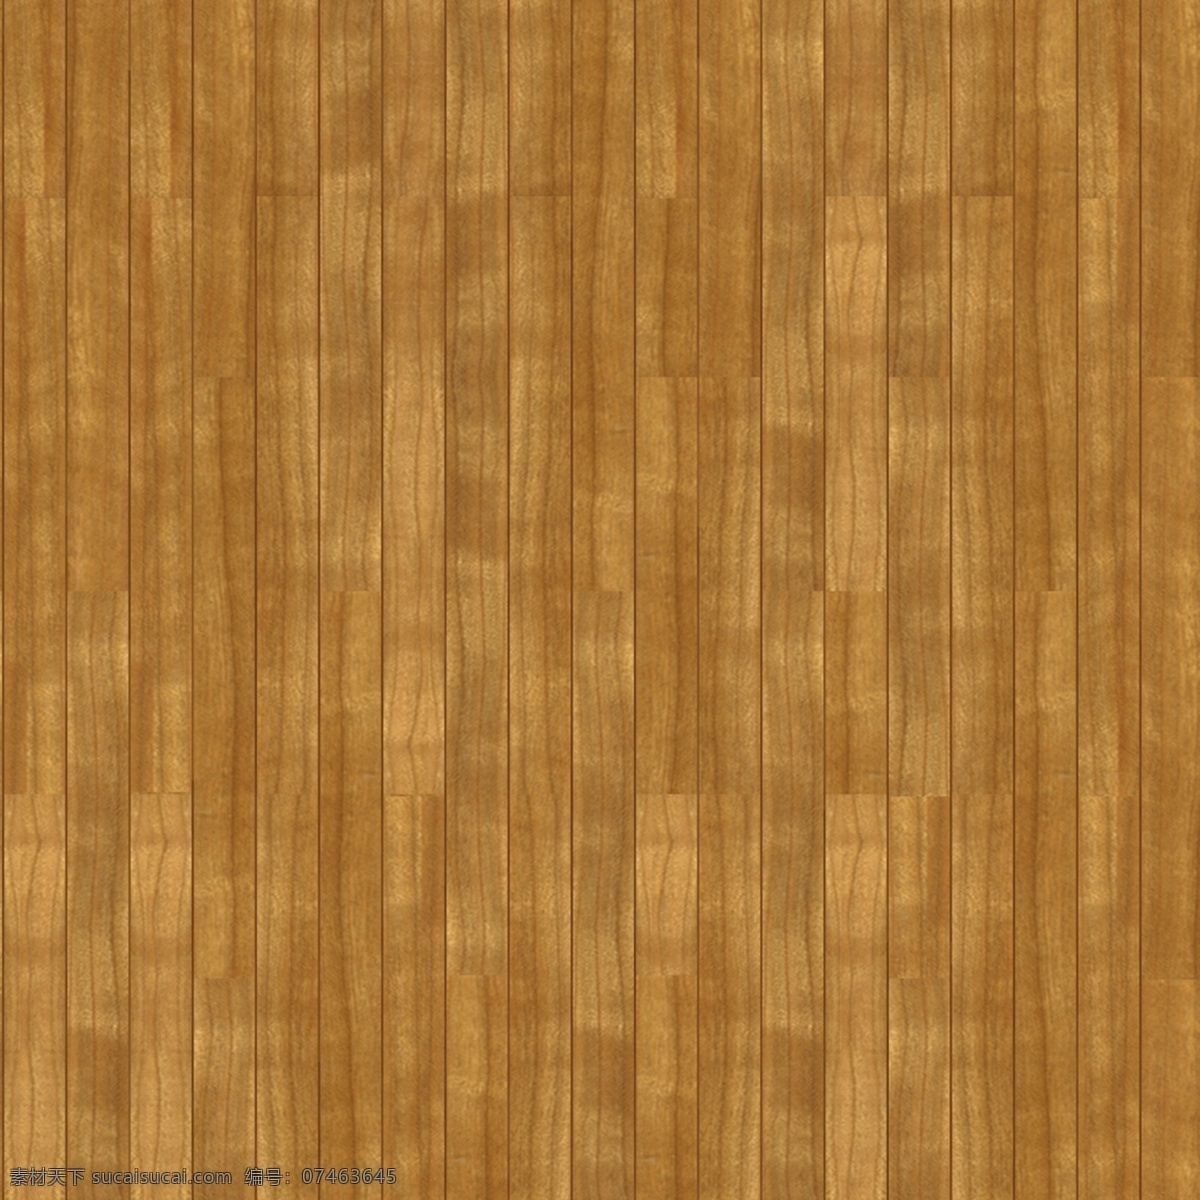 ca 木地板 材质贴图 木材 园林 建筑装饰 设计素材